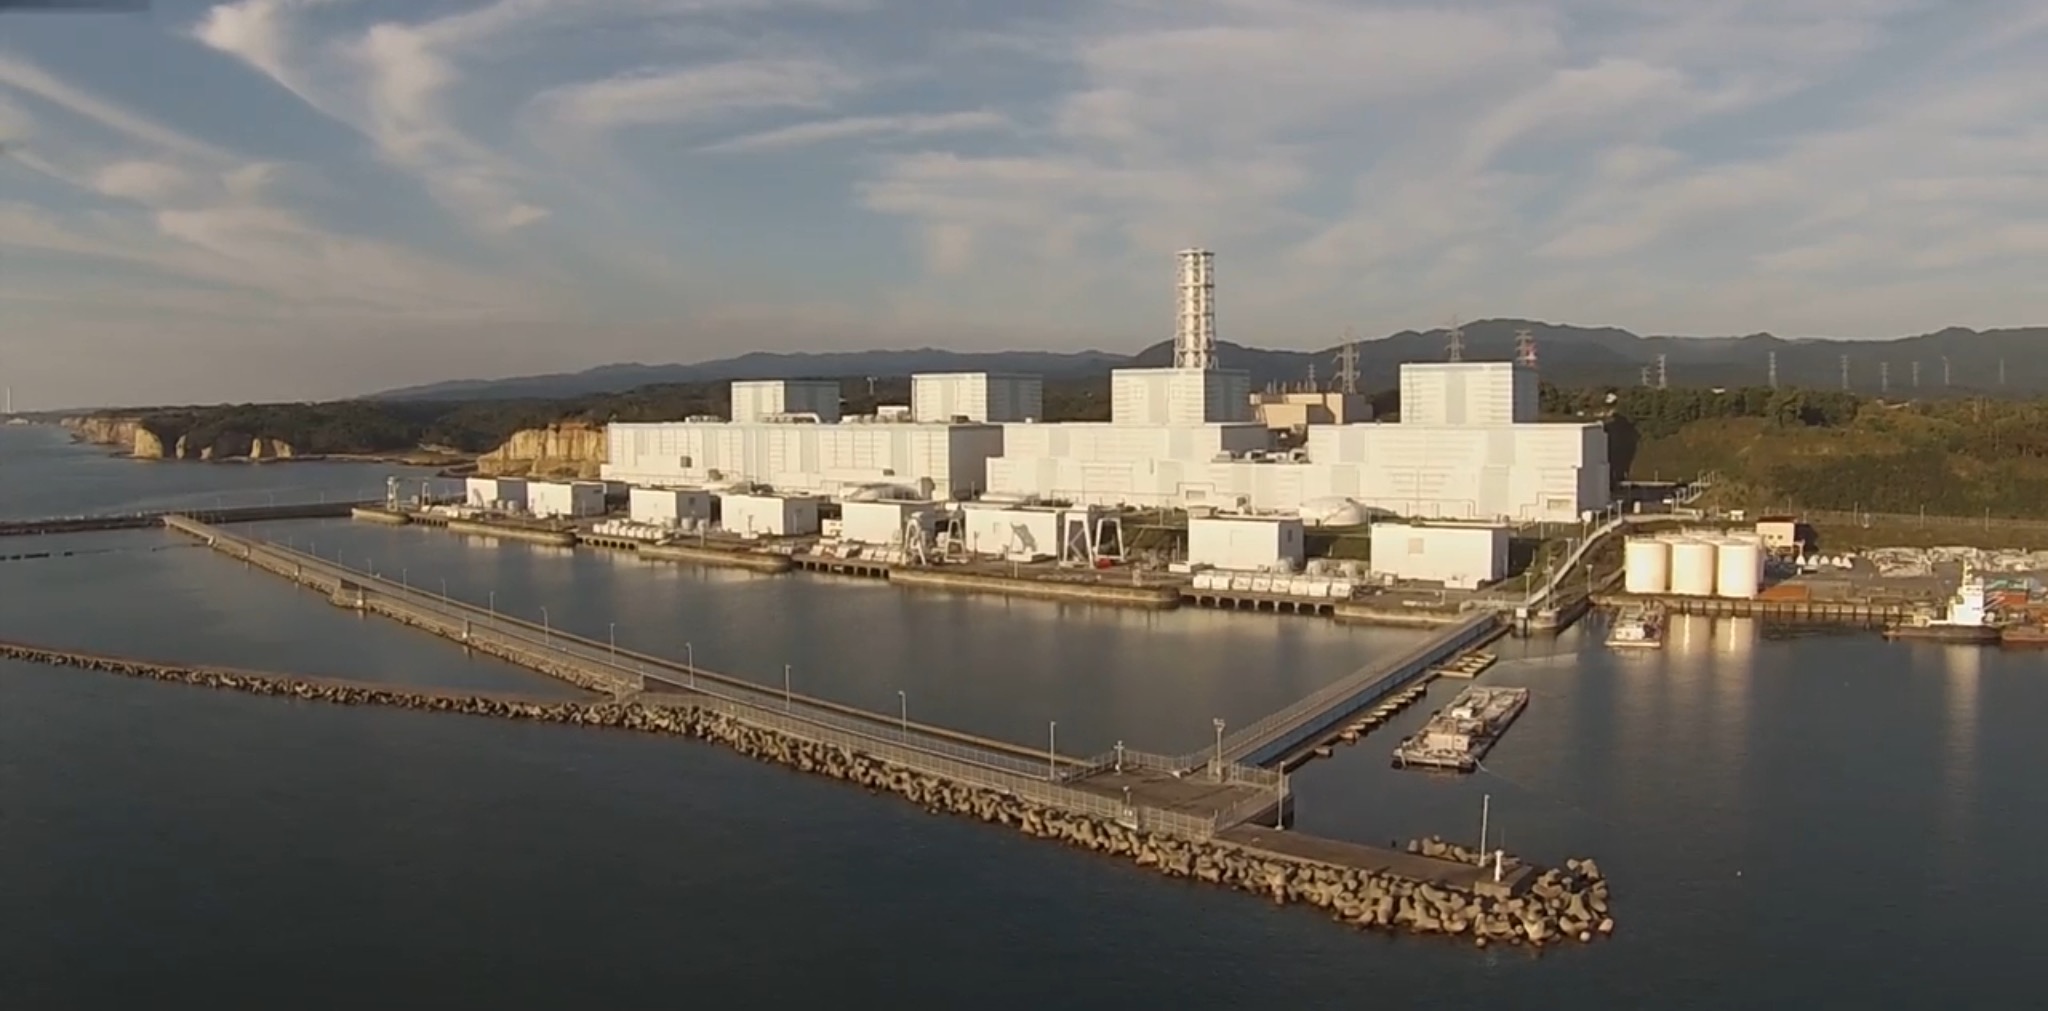 Fukushima Daini Nuclear Power Plant - Wikipedia